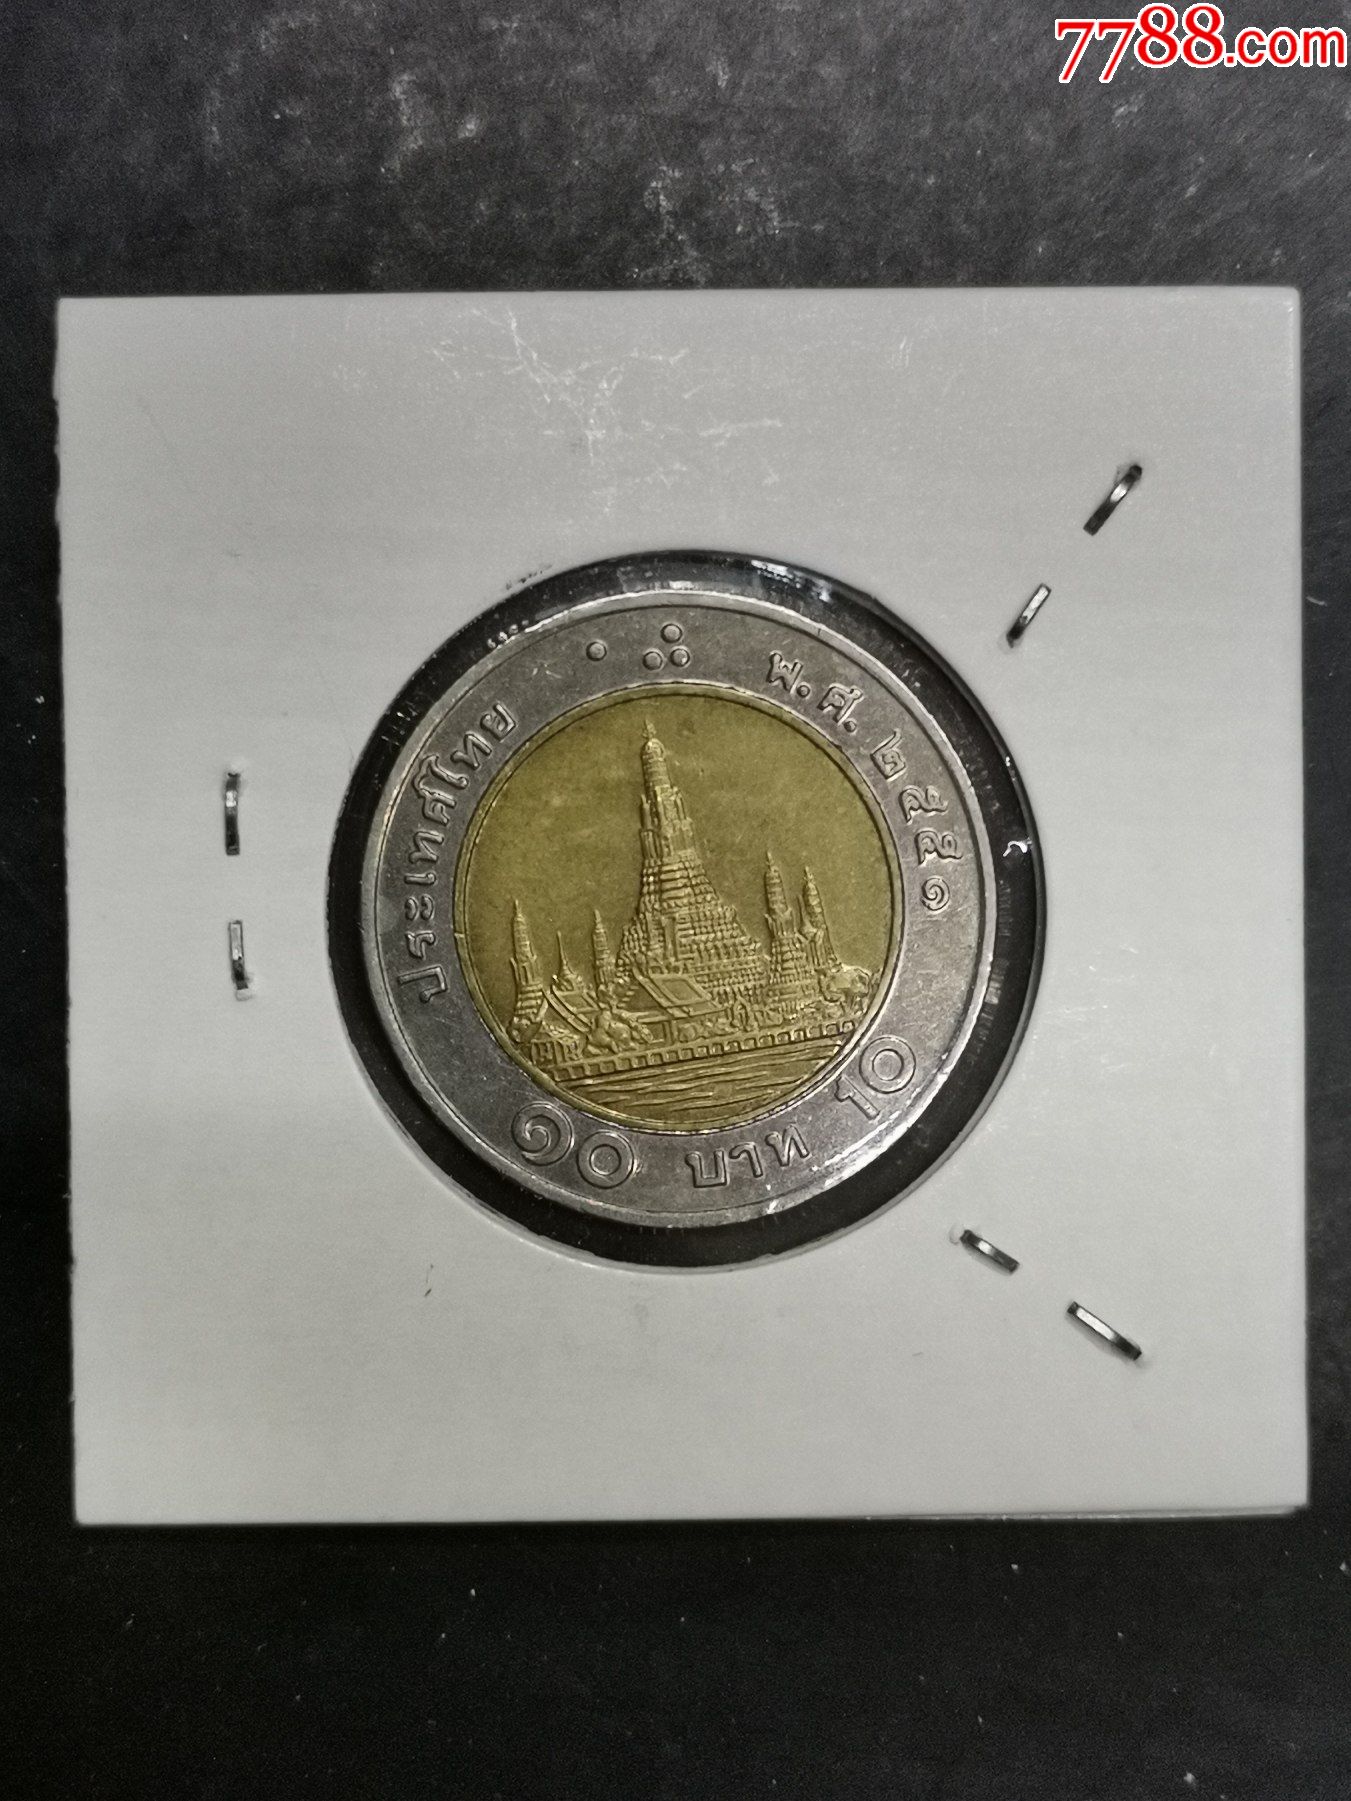 泰国10泰铢纪念硬币图片